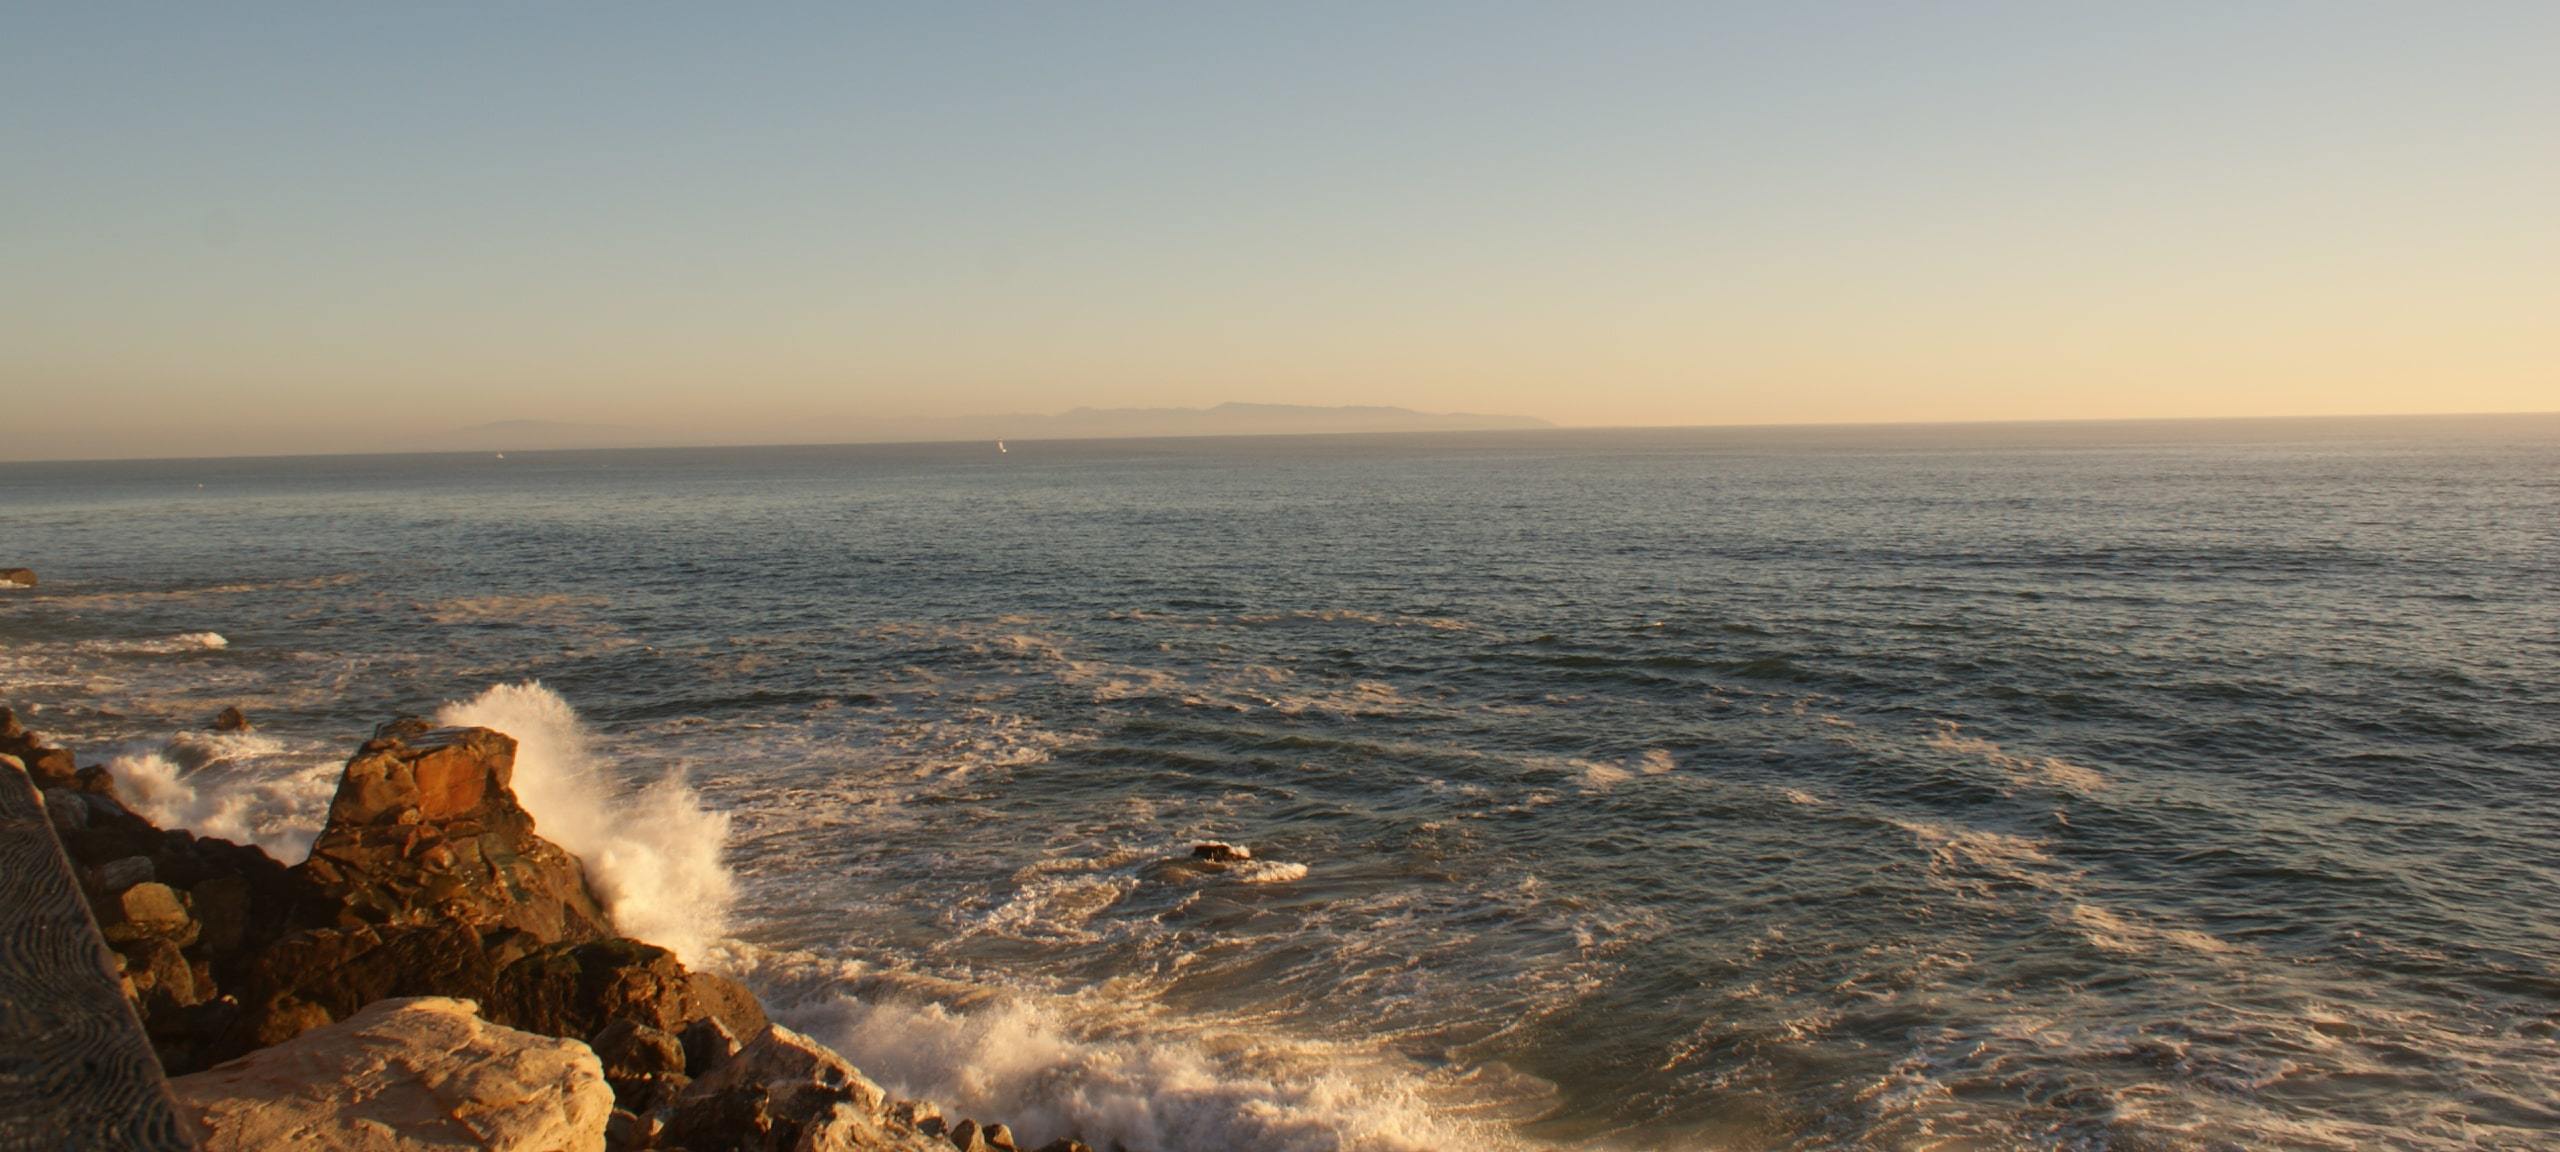 Crashing waves at Santa Cruz waterfront during sunset